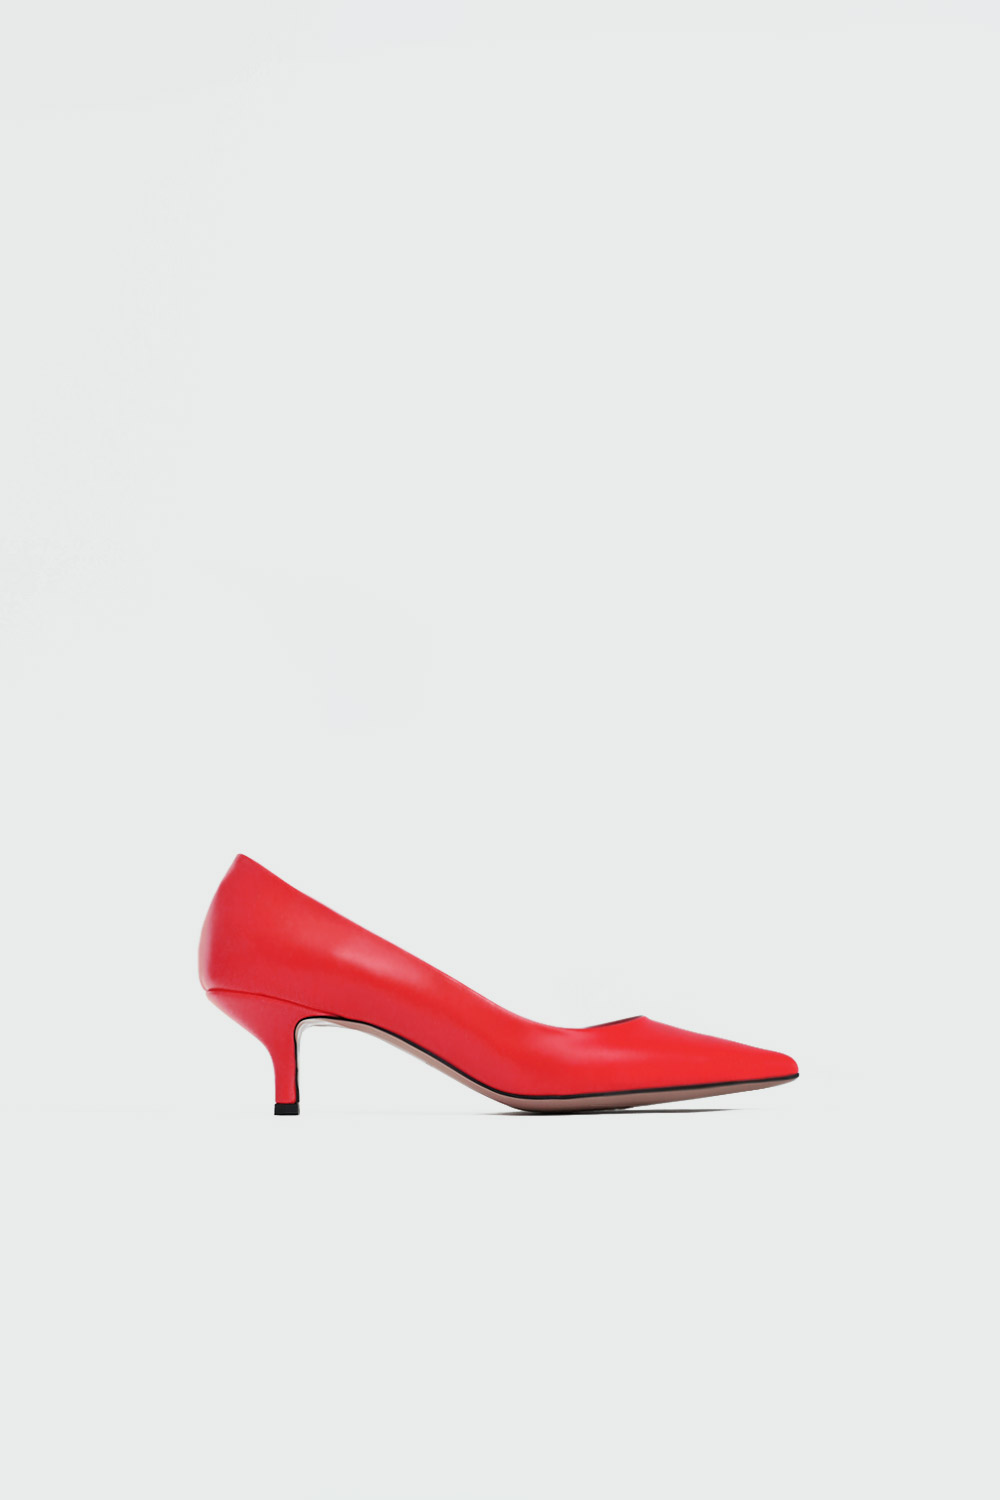 Sophia Sivri Burun Stiletto Kırmızı Kadın Topuklu